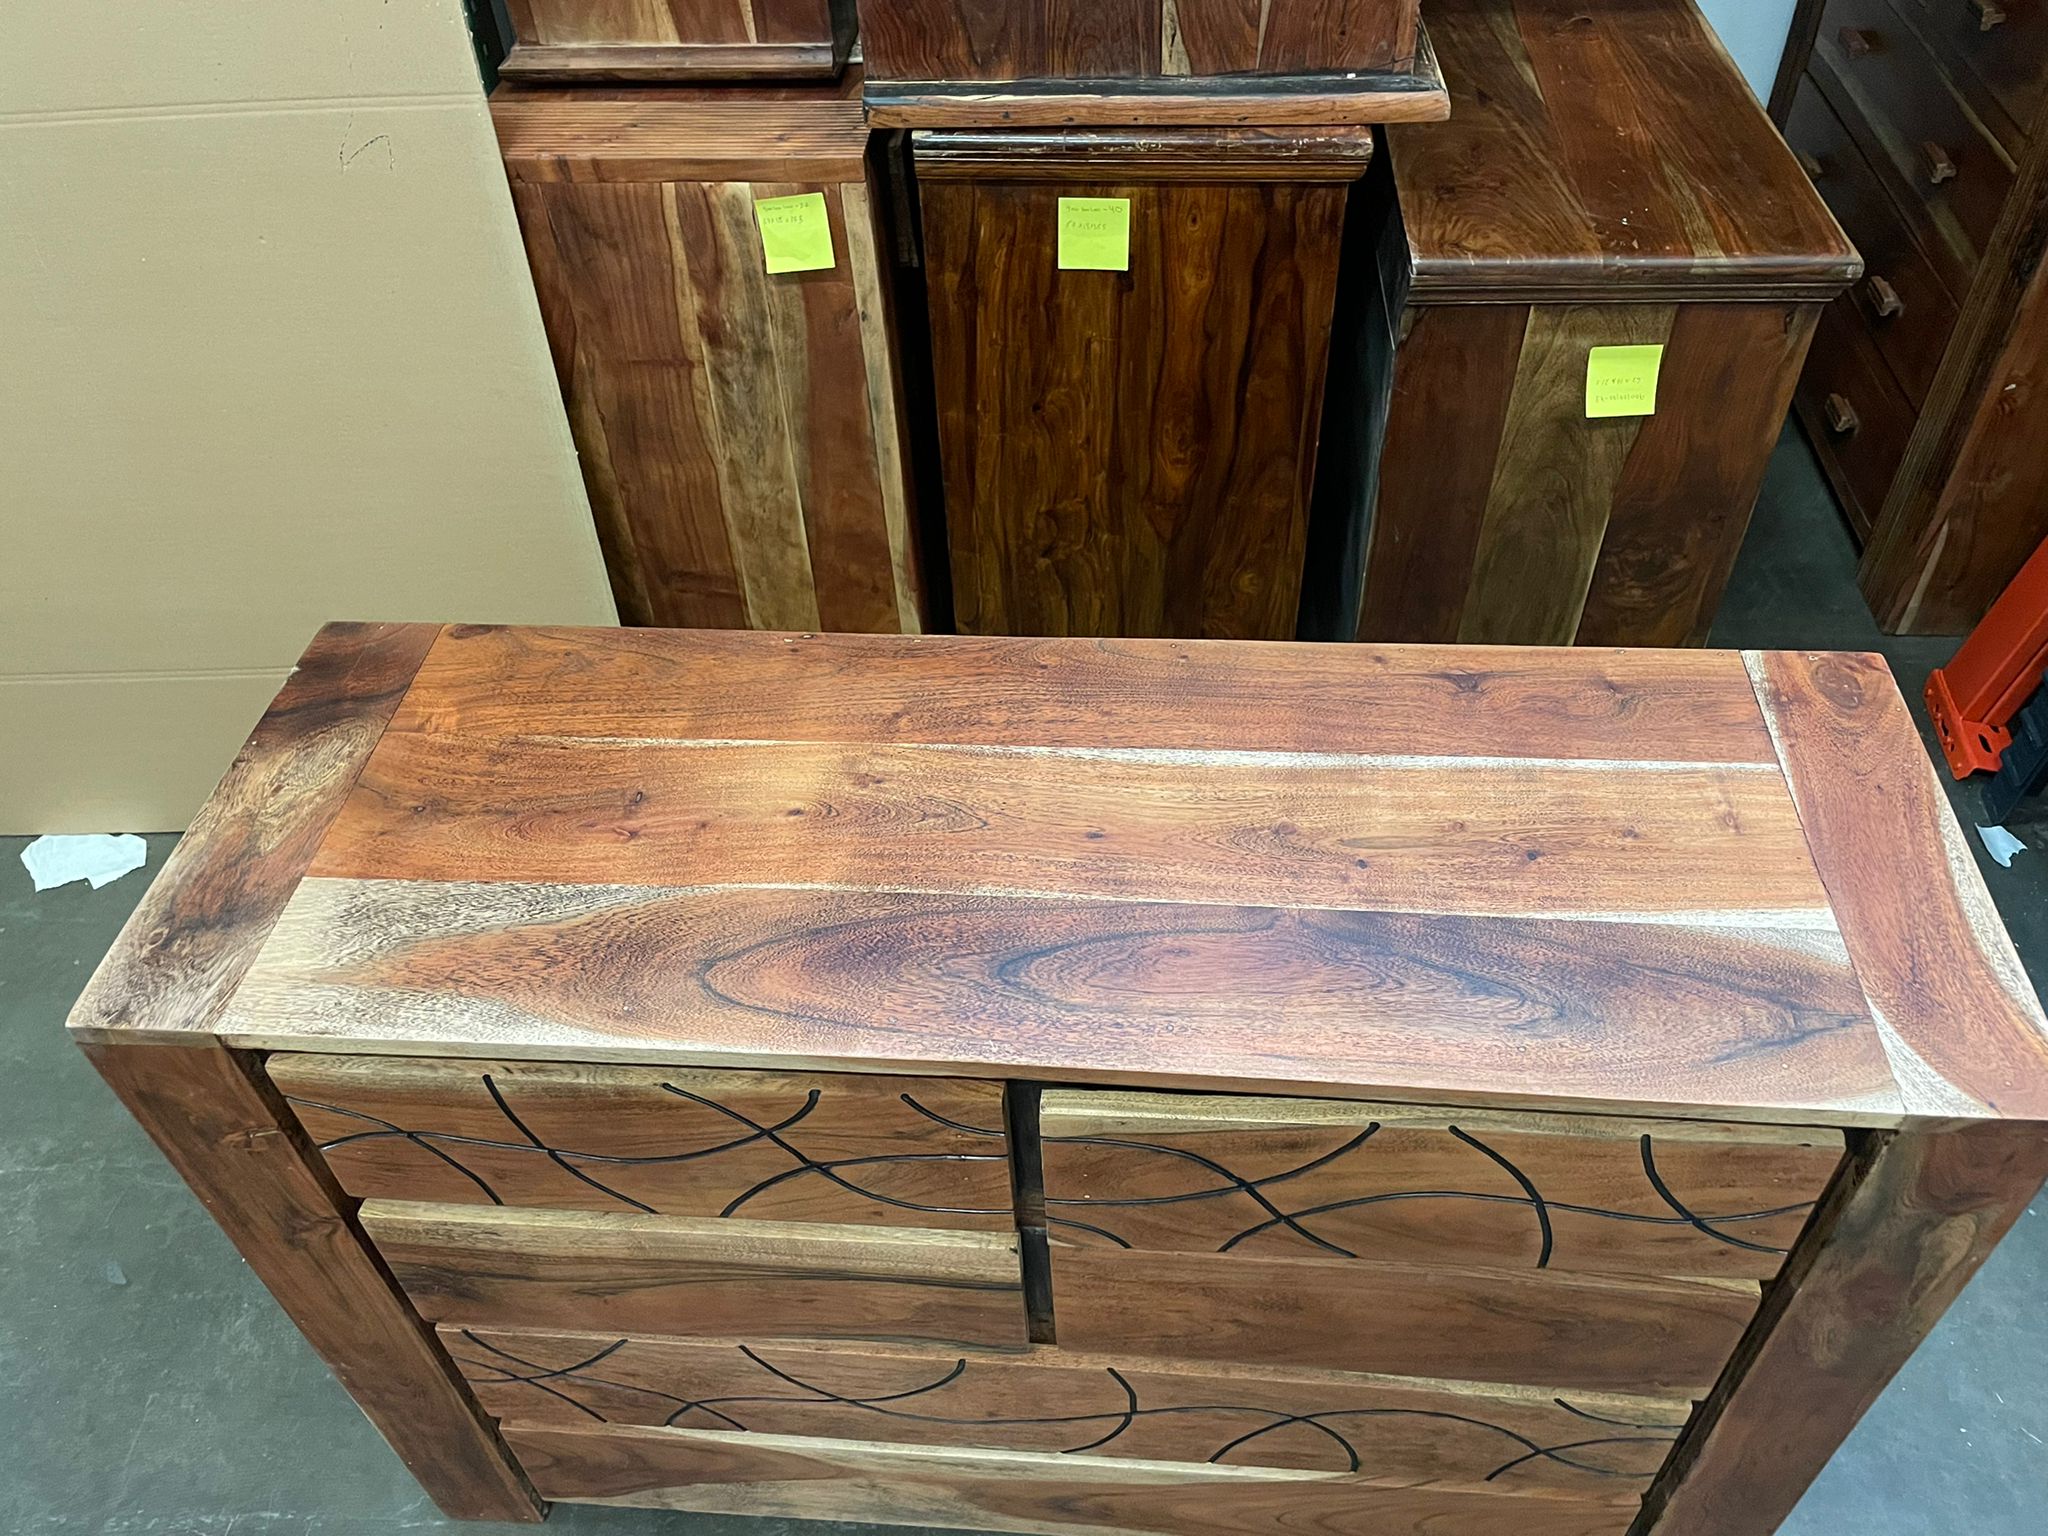 Antique Indian Handmade Dresser| Teak Wood| Indian Dresser| Carved Dresser